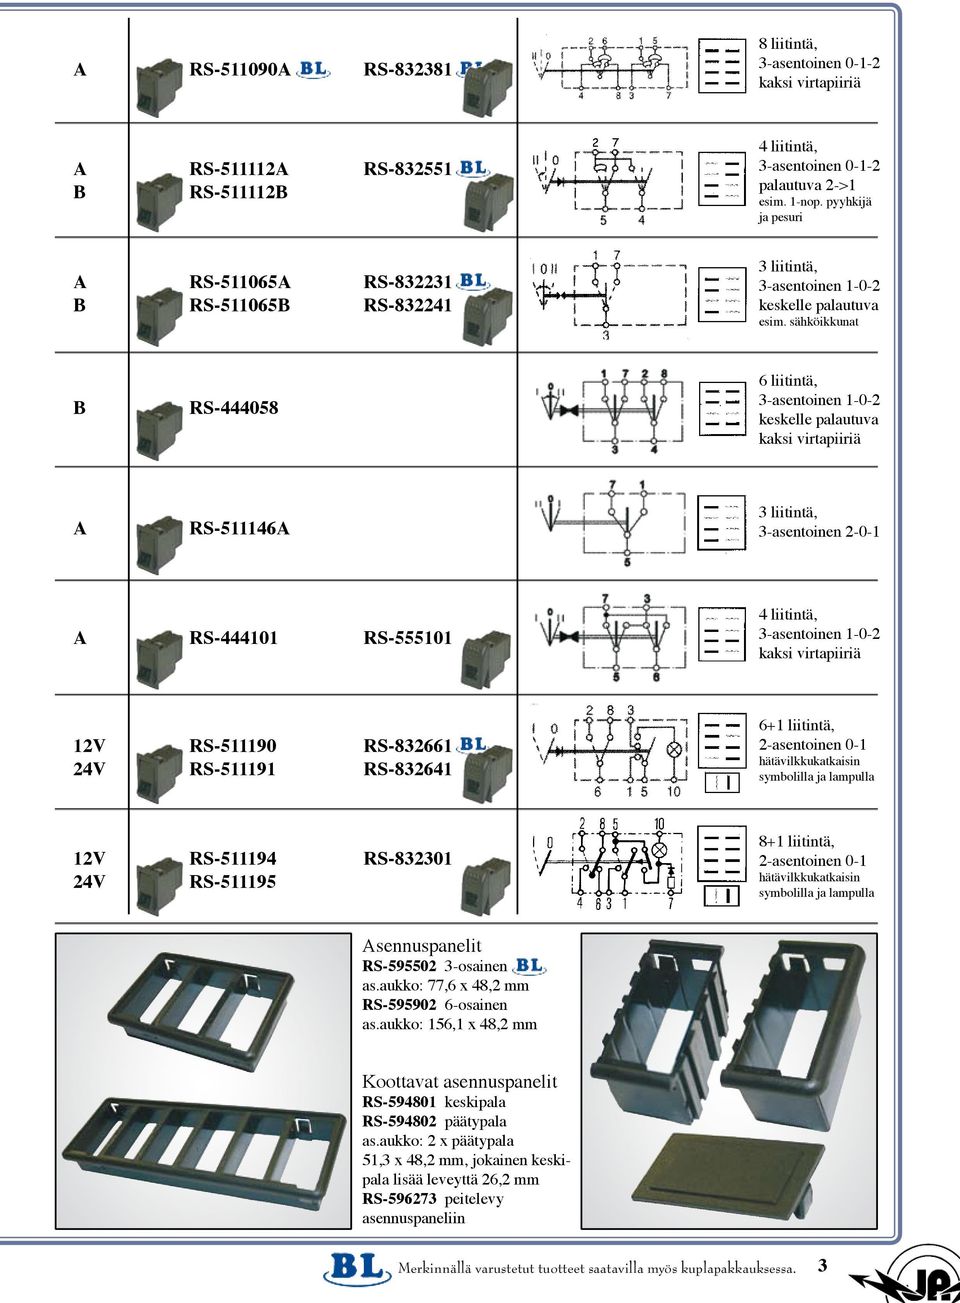 sähköikkunat B RS-444058 6 liitintä, 3-asentoinen 1-0-2 keskelle kaksi virtapiiriä A RS-511146A 3 liitintä, 3-asentoinen 2-0-1 A RS-444101 RS-555101 4 liitintä, 3-asentoinen 1-0-2 kaksi virtapiiriä